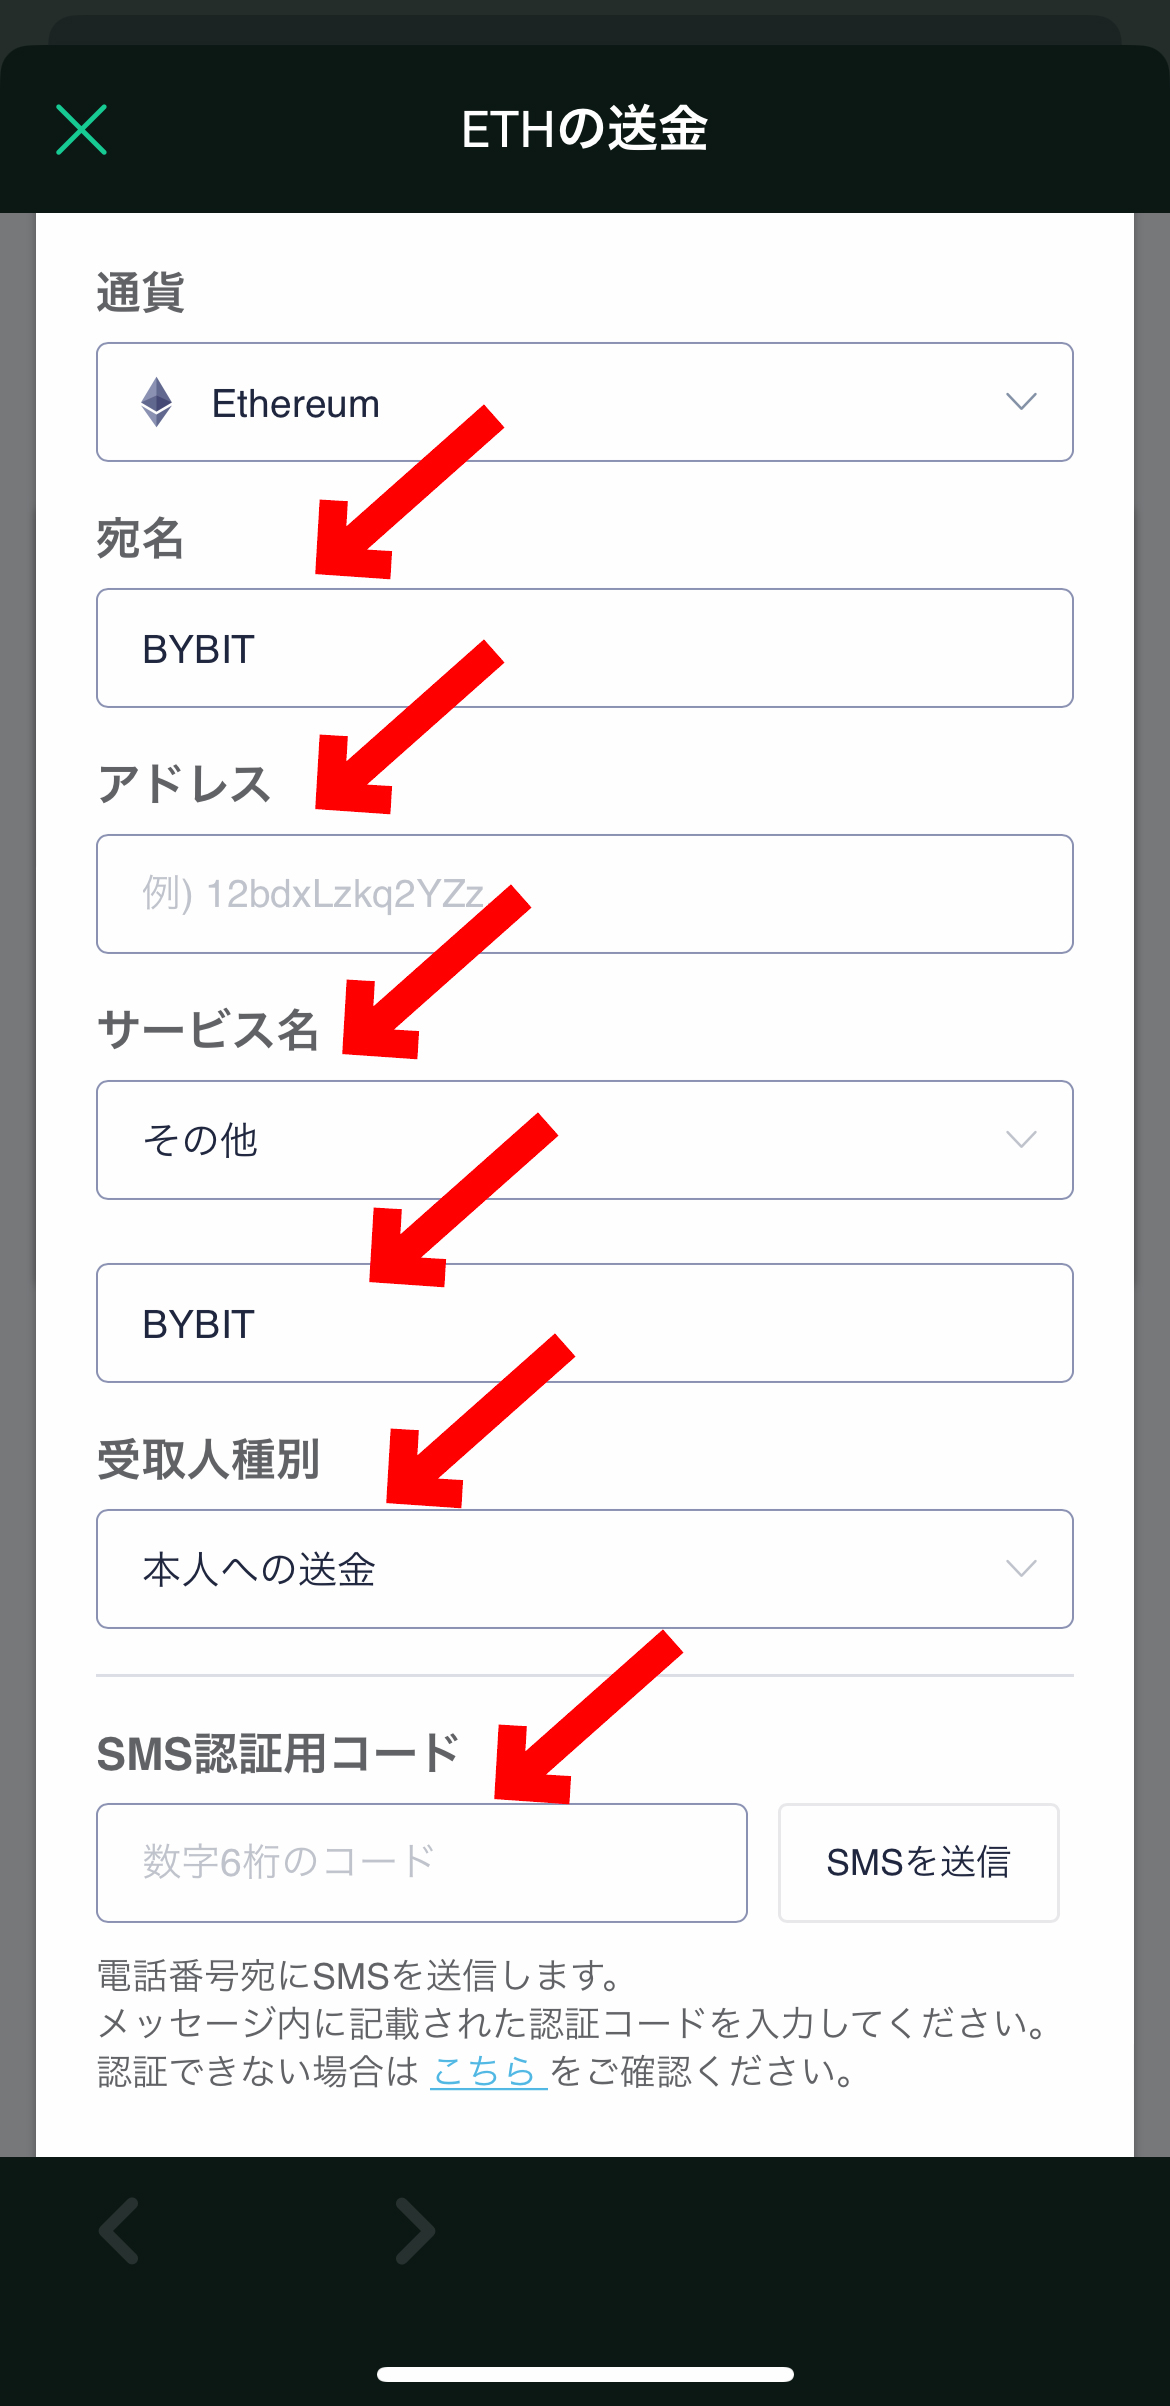 イーサリアムの買い方、ステーキング方法【Bybit】【1万円から始める】【スマホで簡単】【初心者向け】SMS認証用コードを入力します。